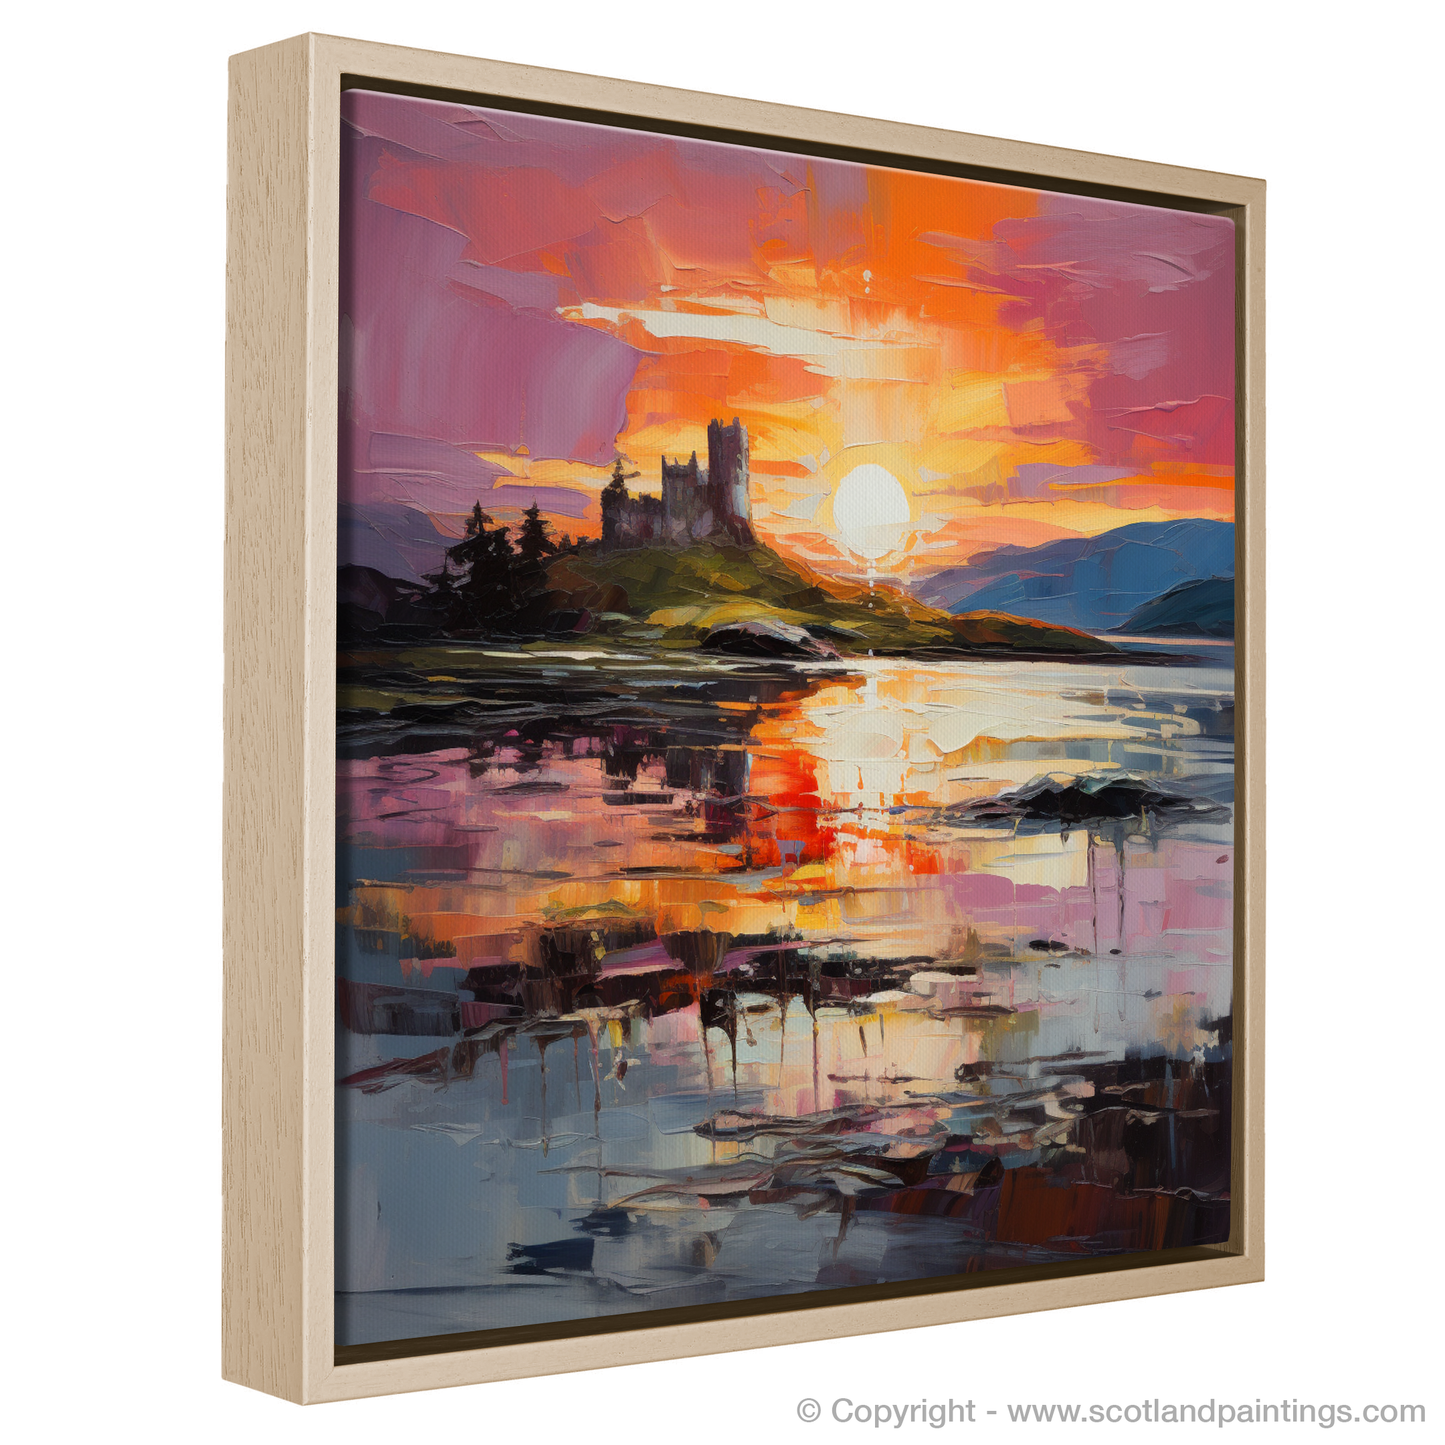 Painting and Art Print of Castle Stalker Bay at sunset entitled "Sunset Blaze over Castle Stalker Bay".